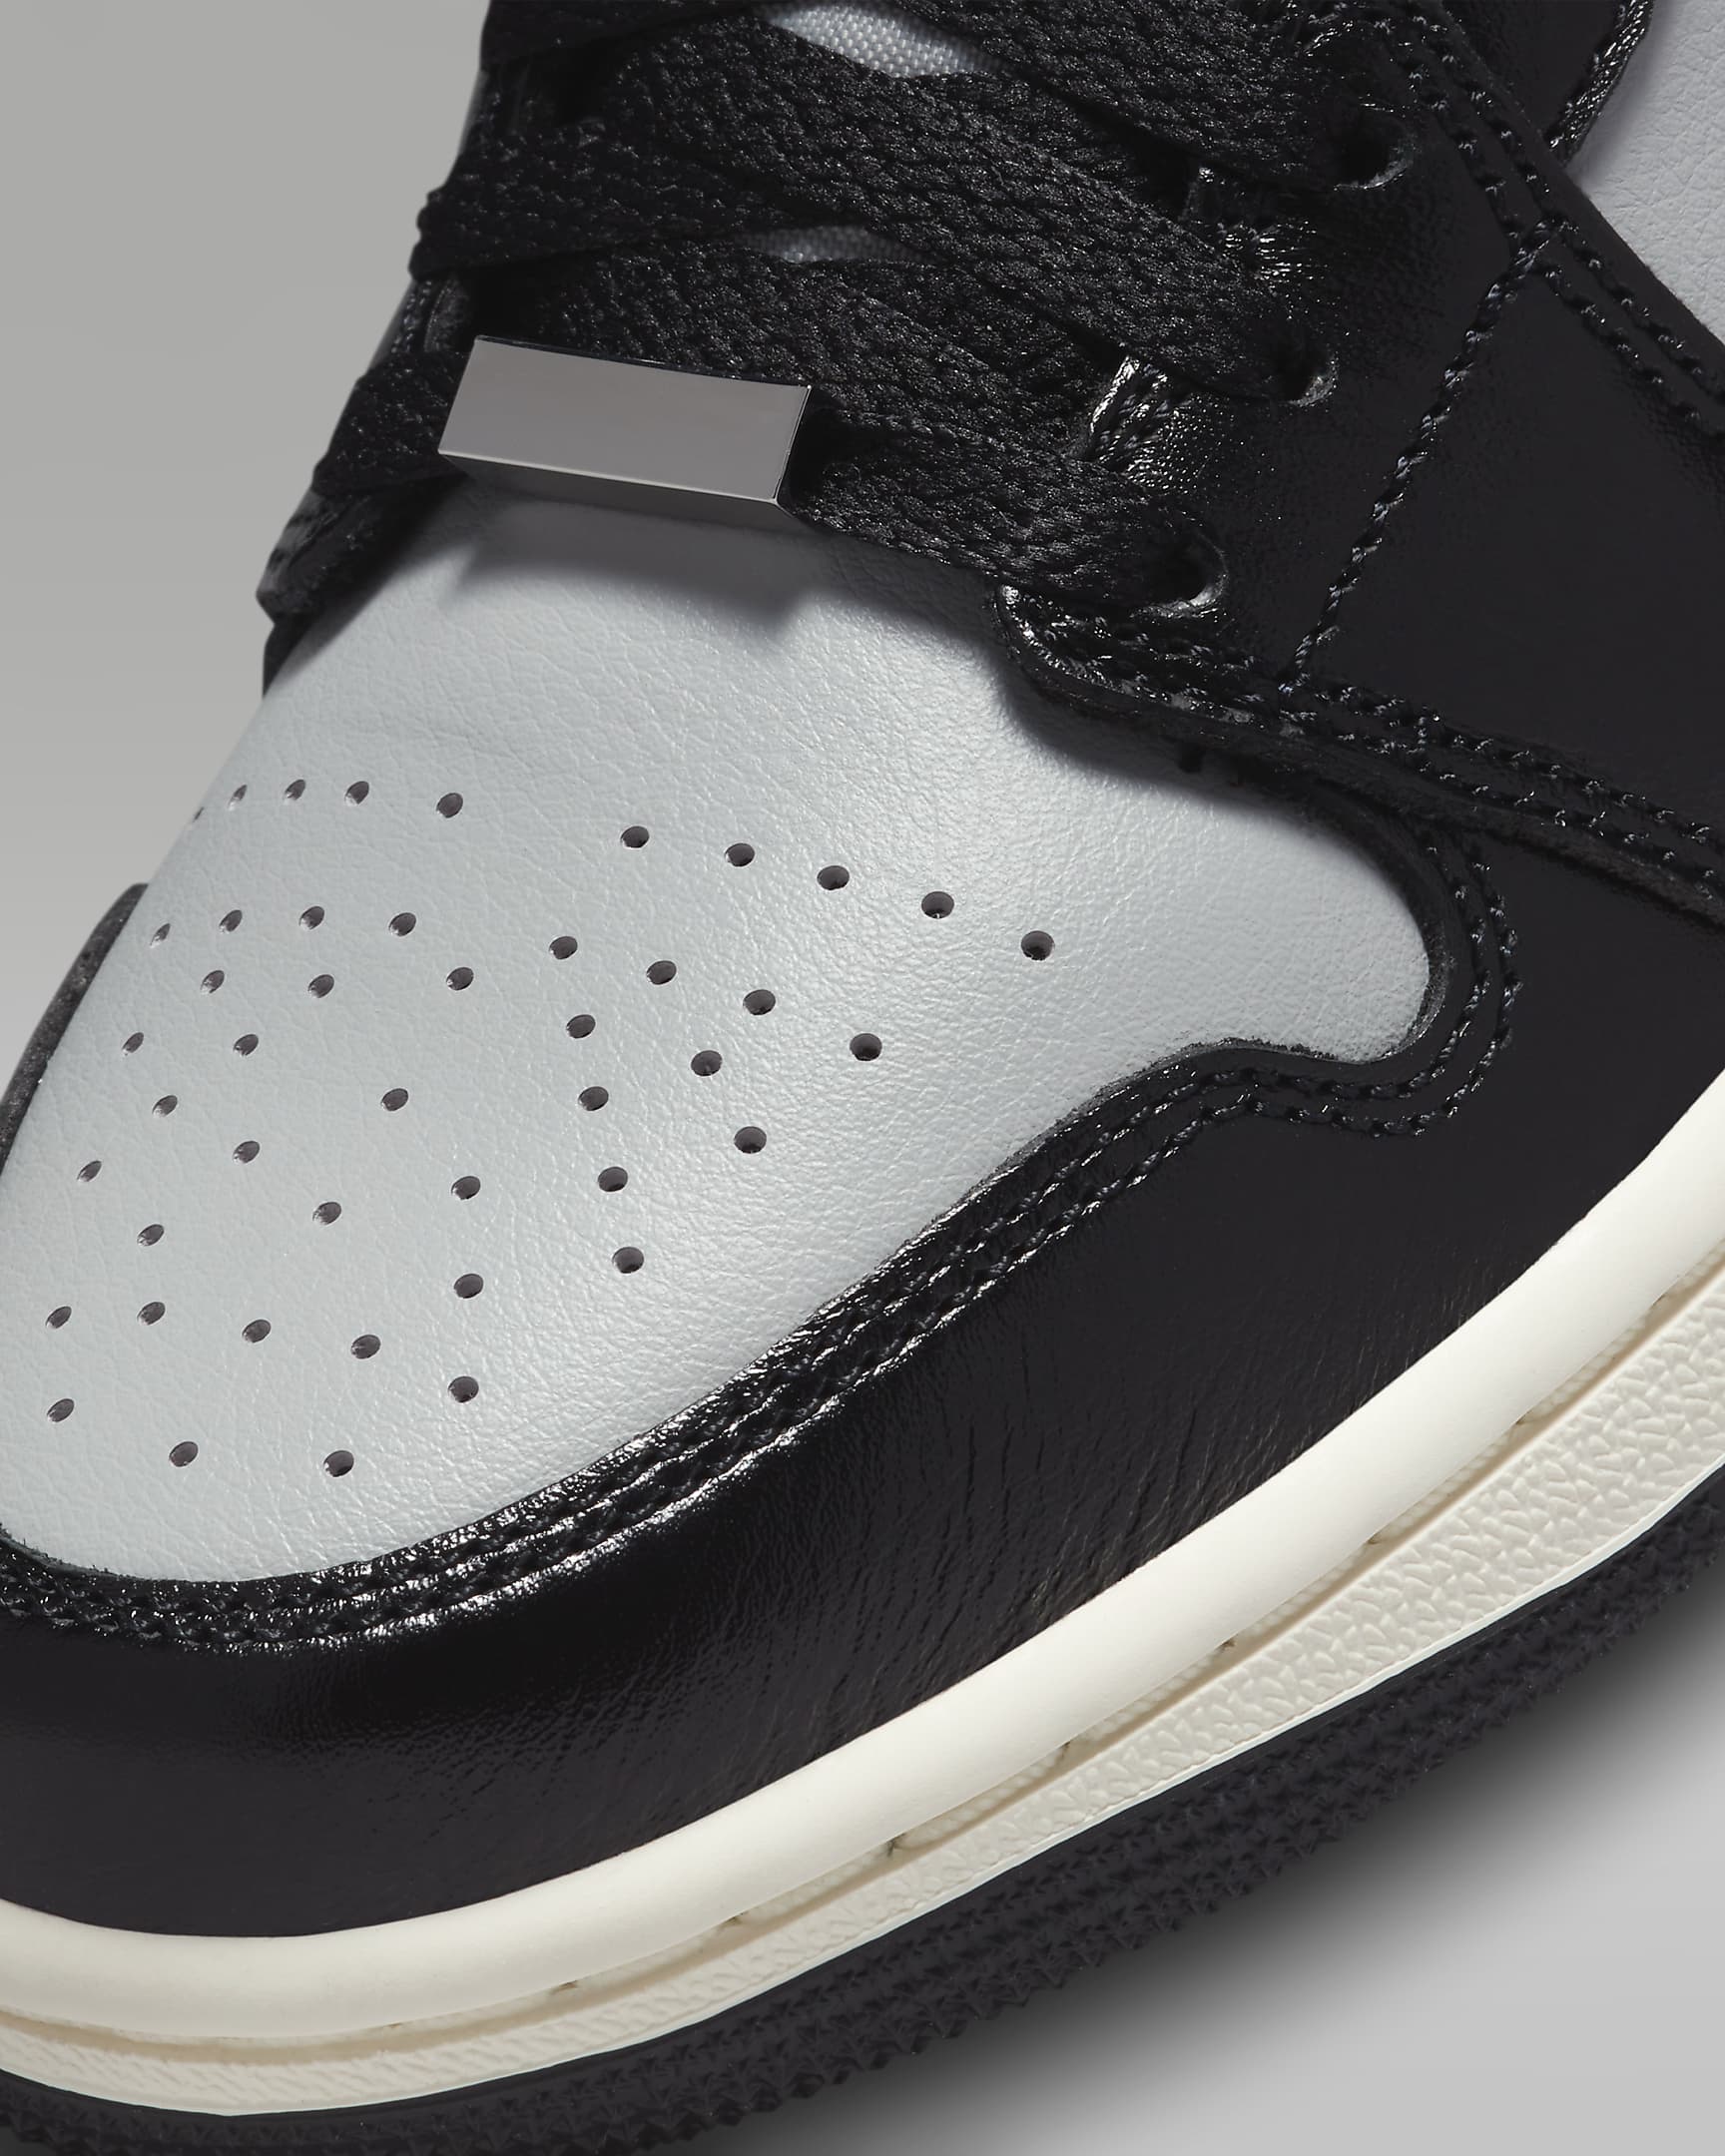 Air Jordan 1 Mid SE Women's Shoes - Black/Light Smoke Grey/Sail/Metallic Silver